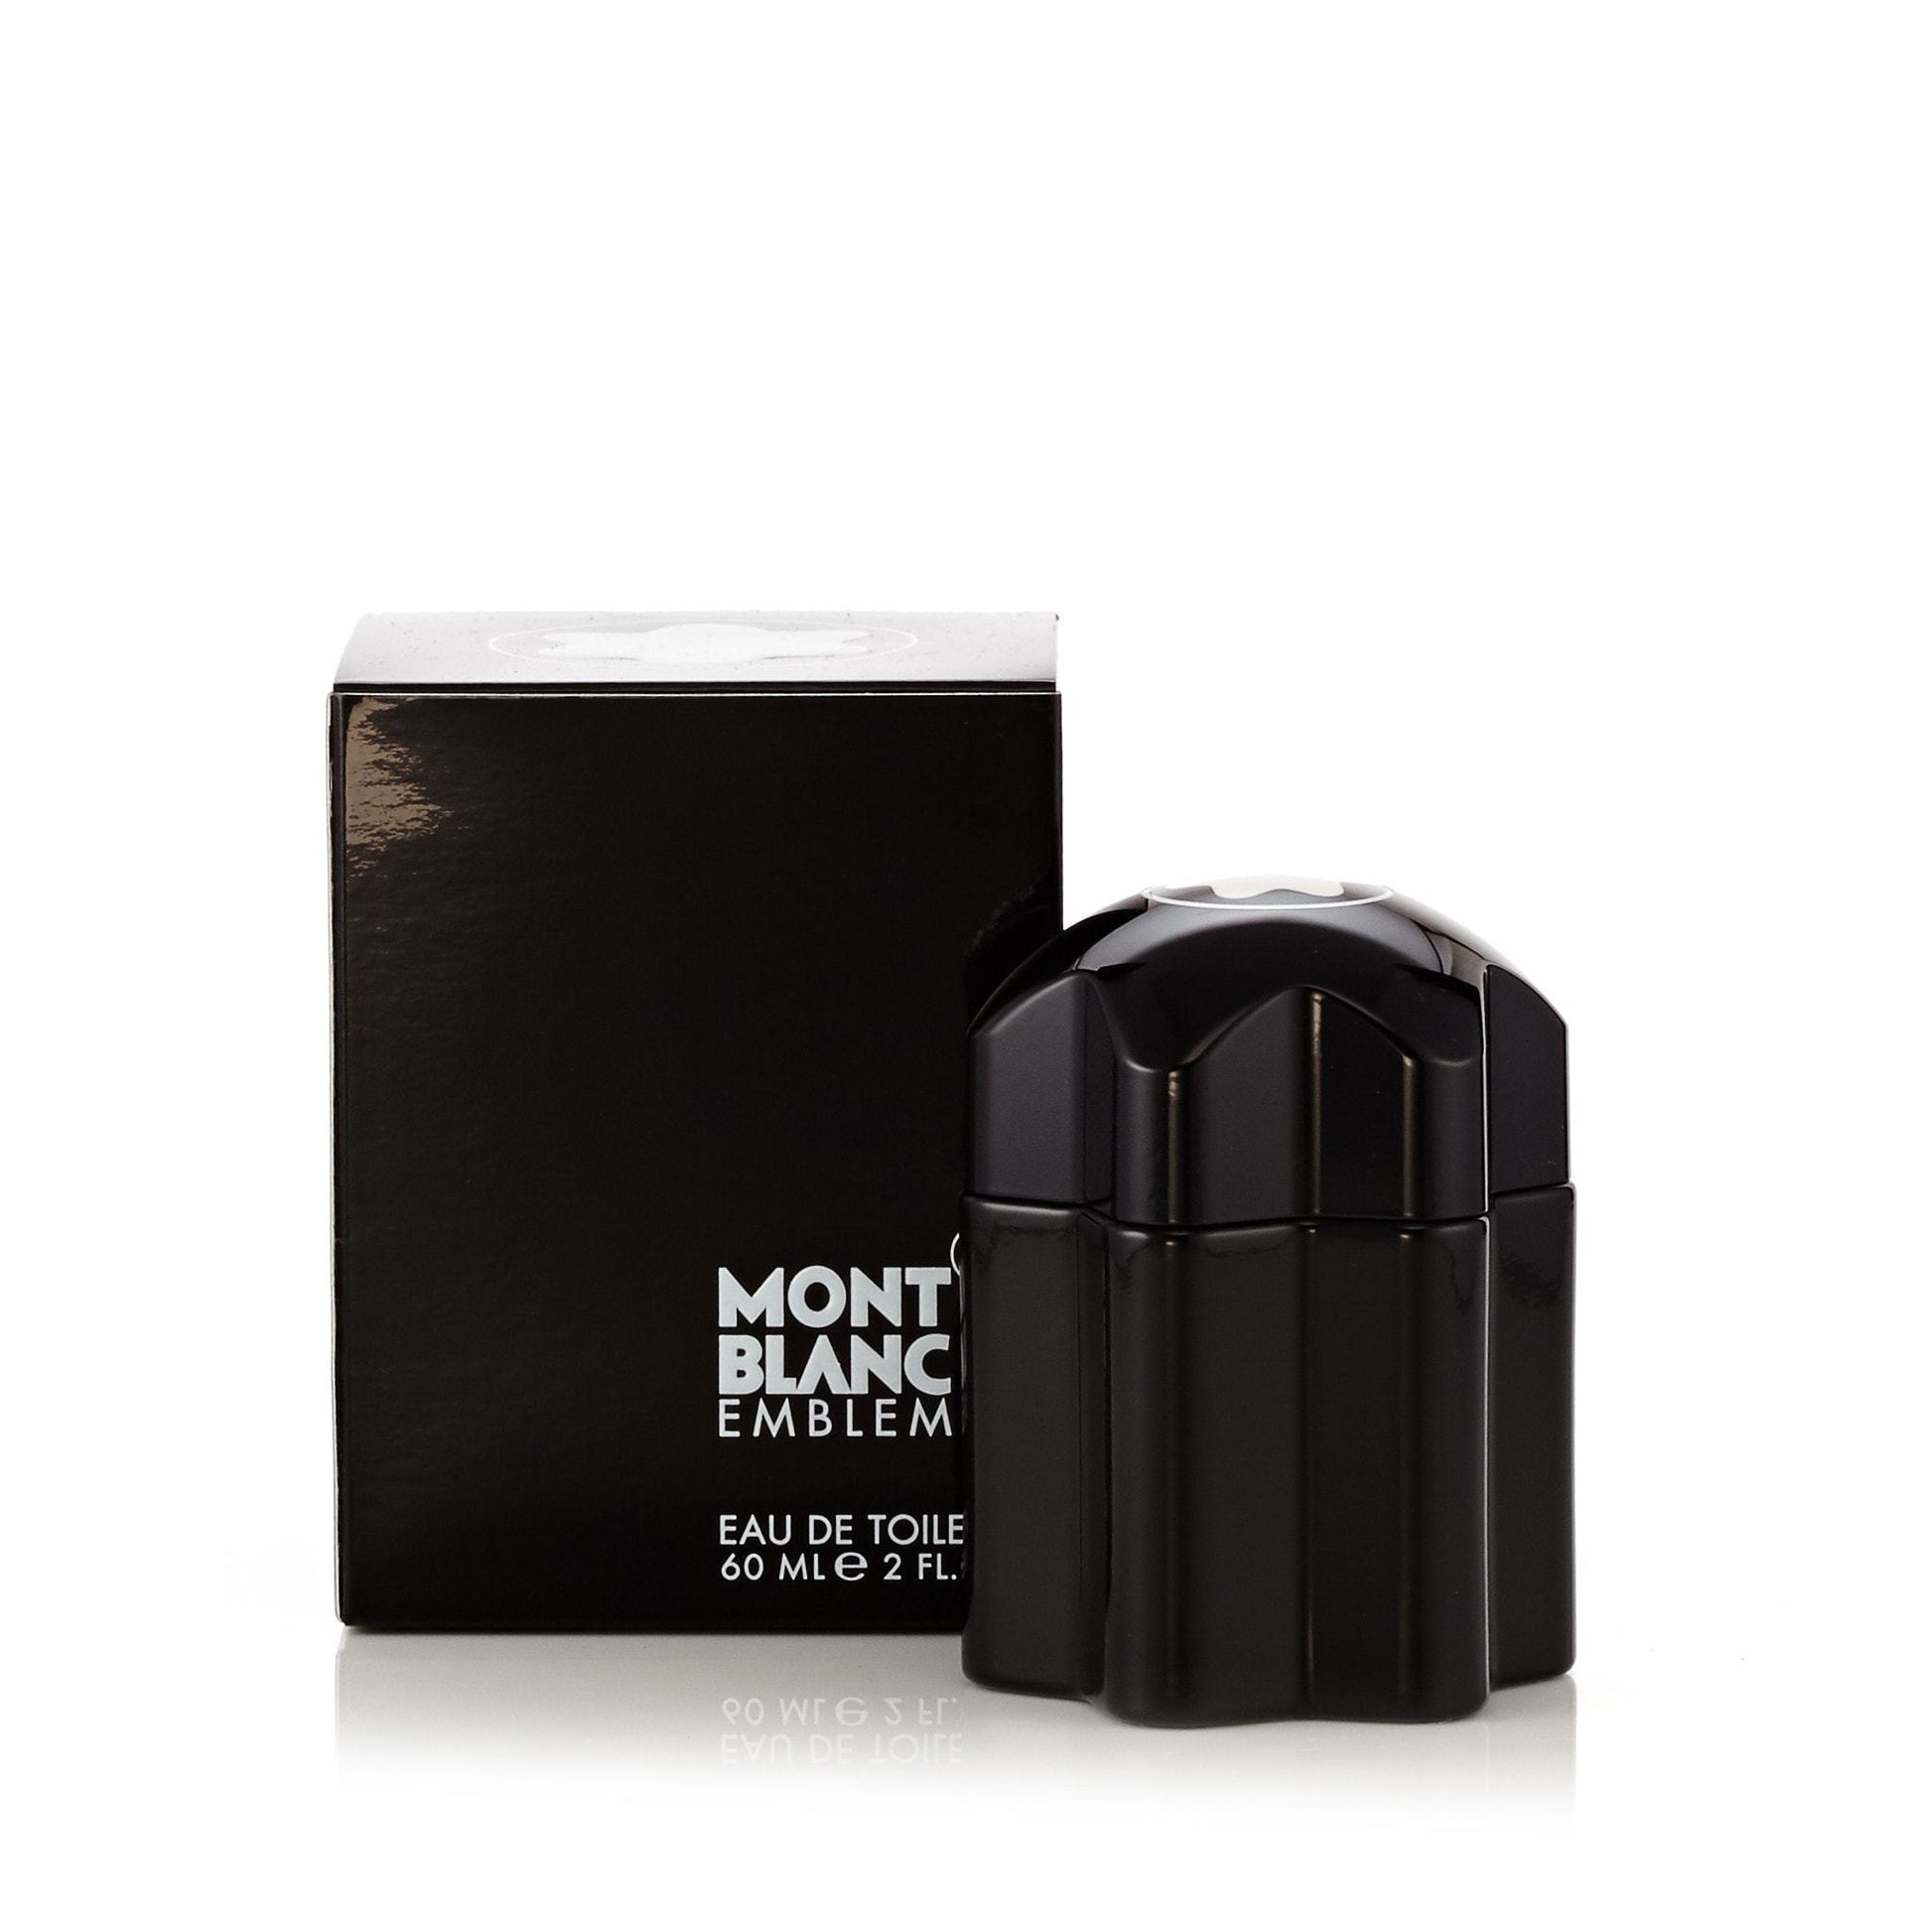 Emblem Eau de Toilette Spray for Men by Montblanc, Product image 3